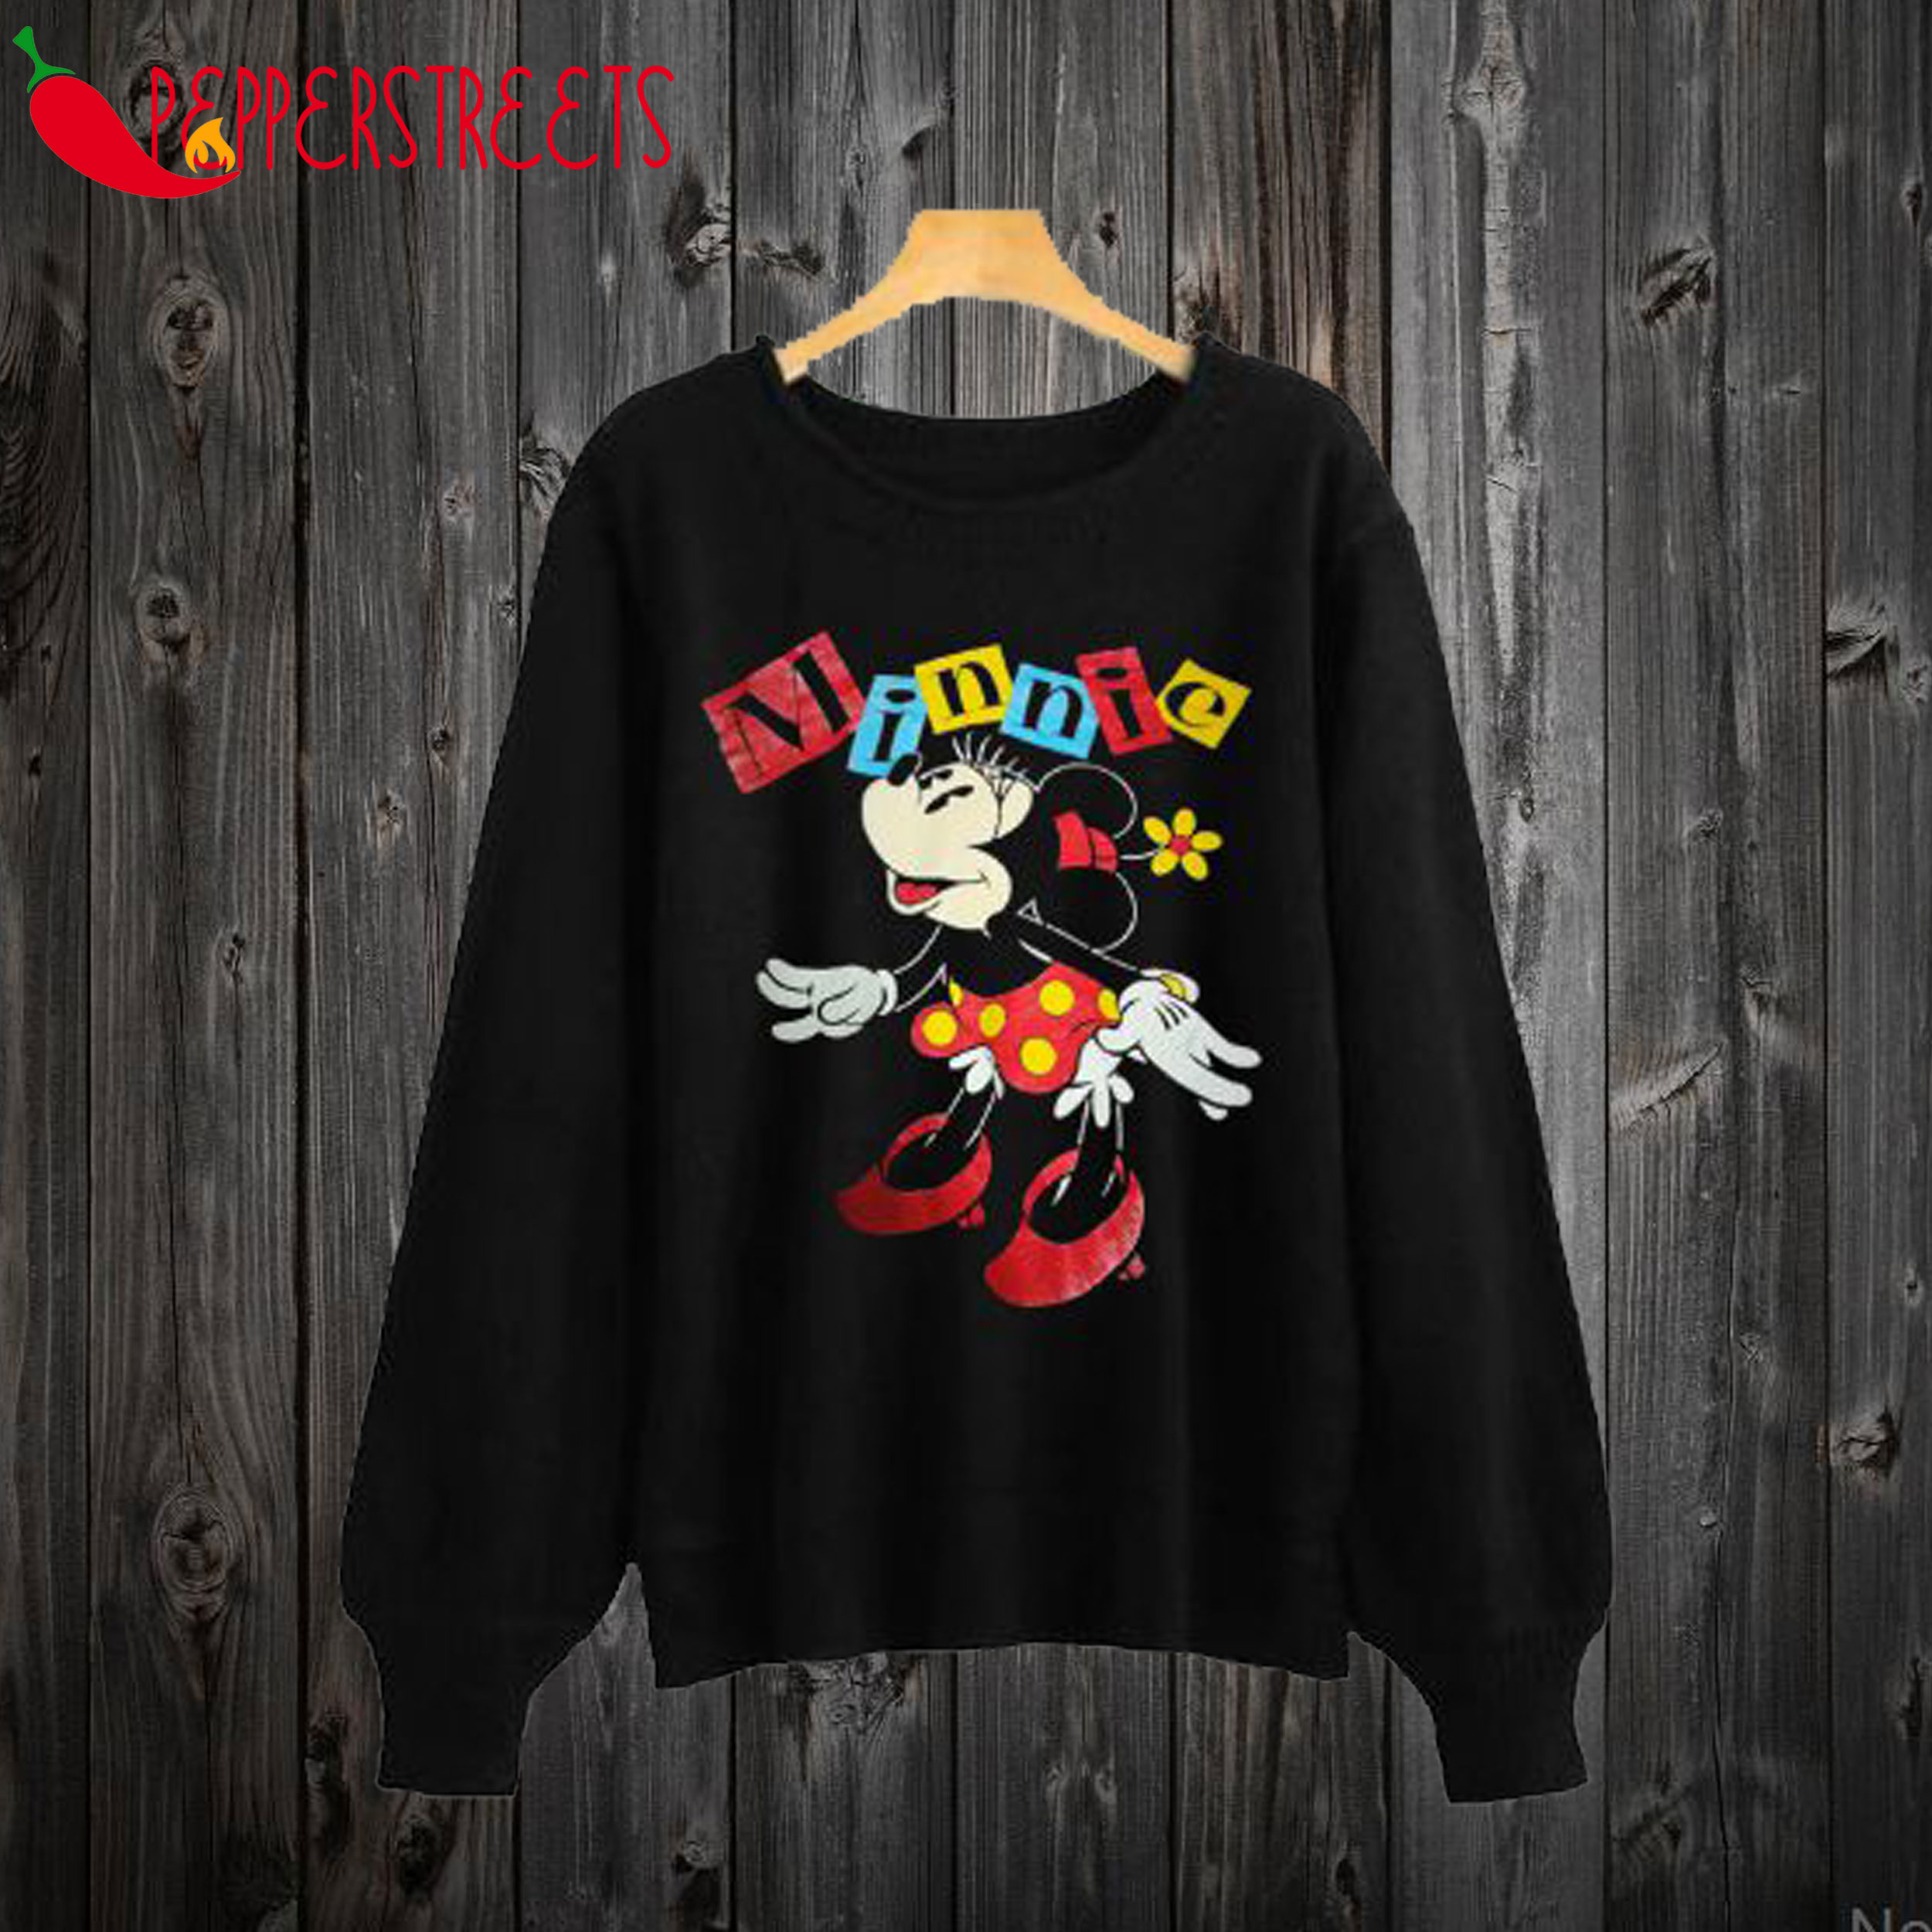 Vintage Minnie Mouse Black Sweatshirt